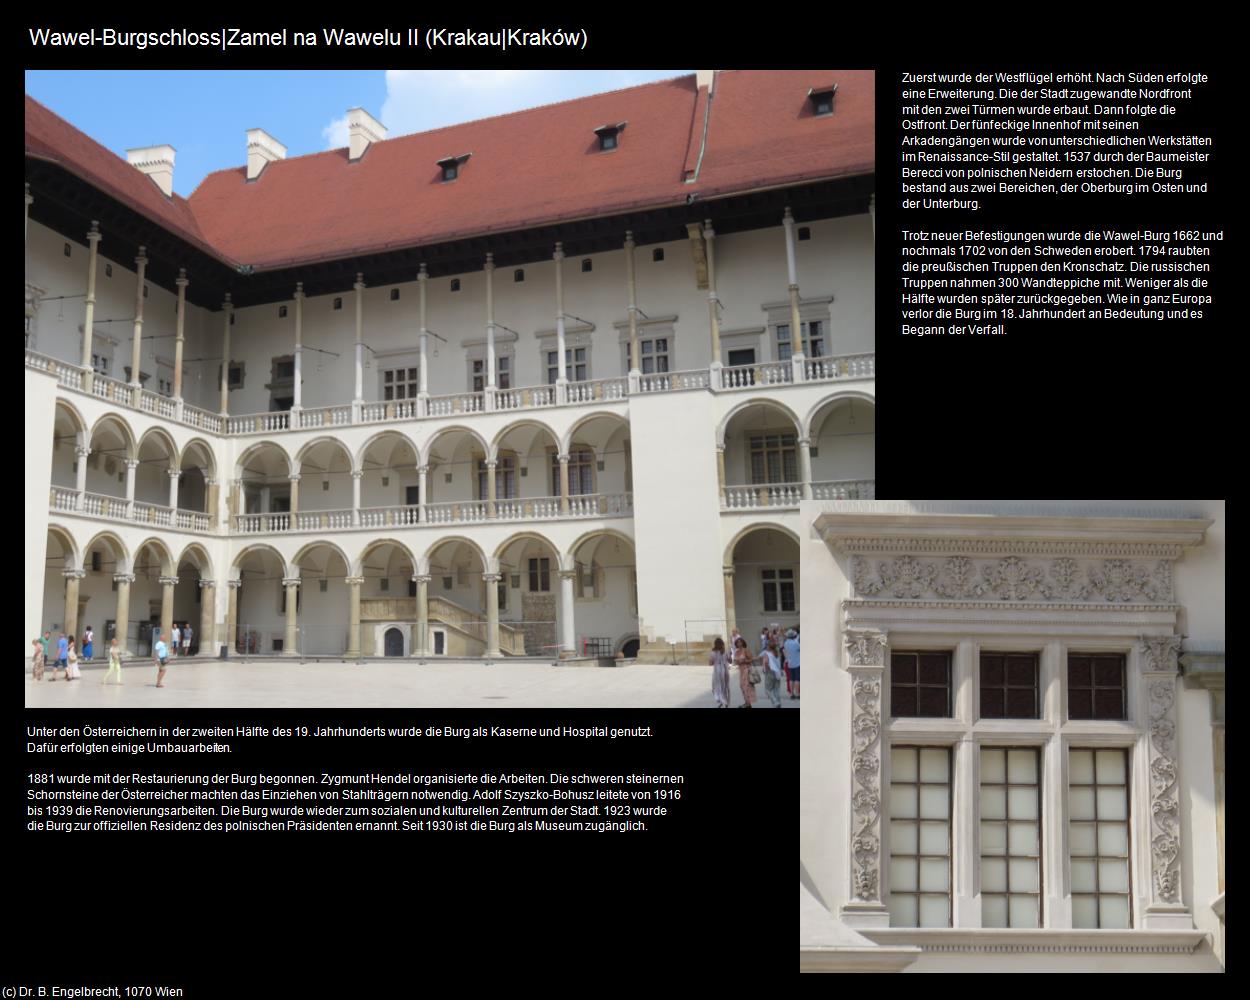 Wawel-Burgschloss II   (Krakau|Krakow) in POLEN-Galizien